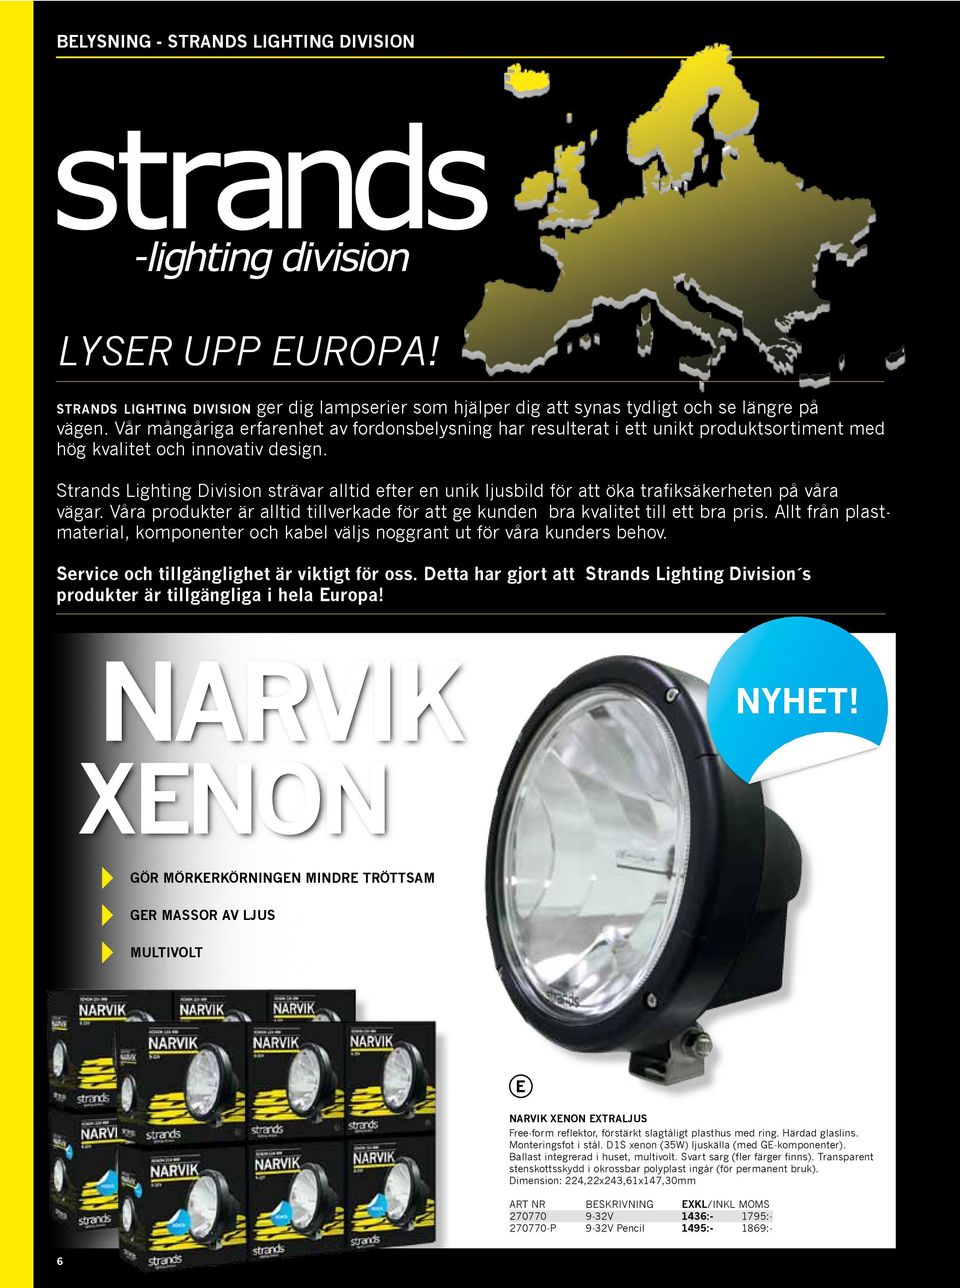 Strands Lighting Division strävar alltid efter en unik ljusbild för att öka trafiksäkerheten på våra vägar. Våra produkter är alltid tillverkade för att ge kunden bra kvalitet till ett bra pris.